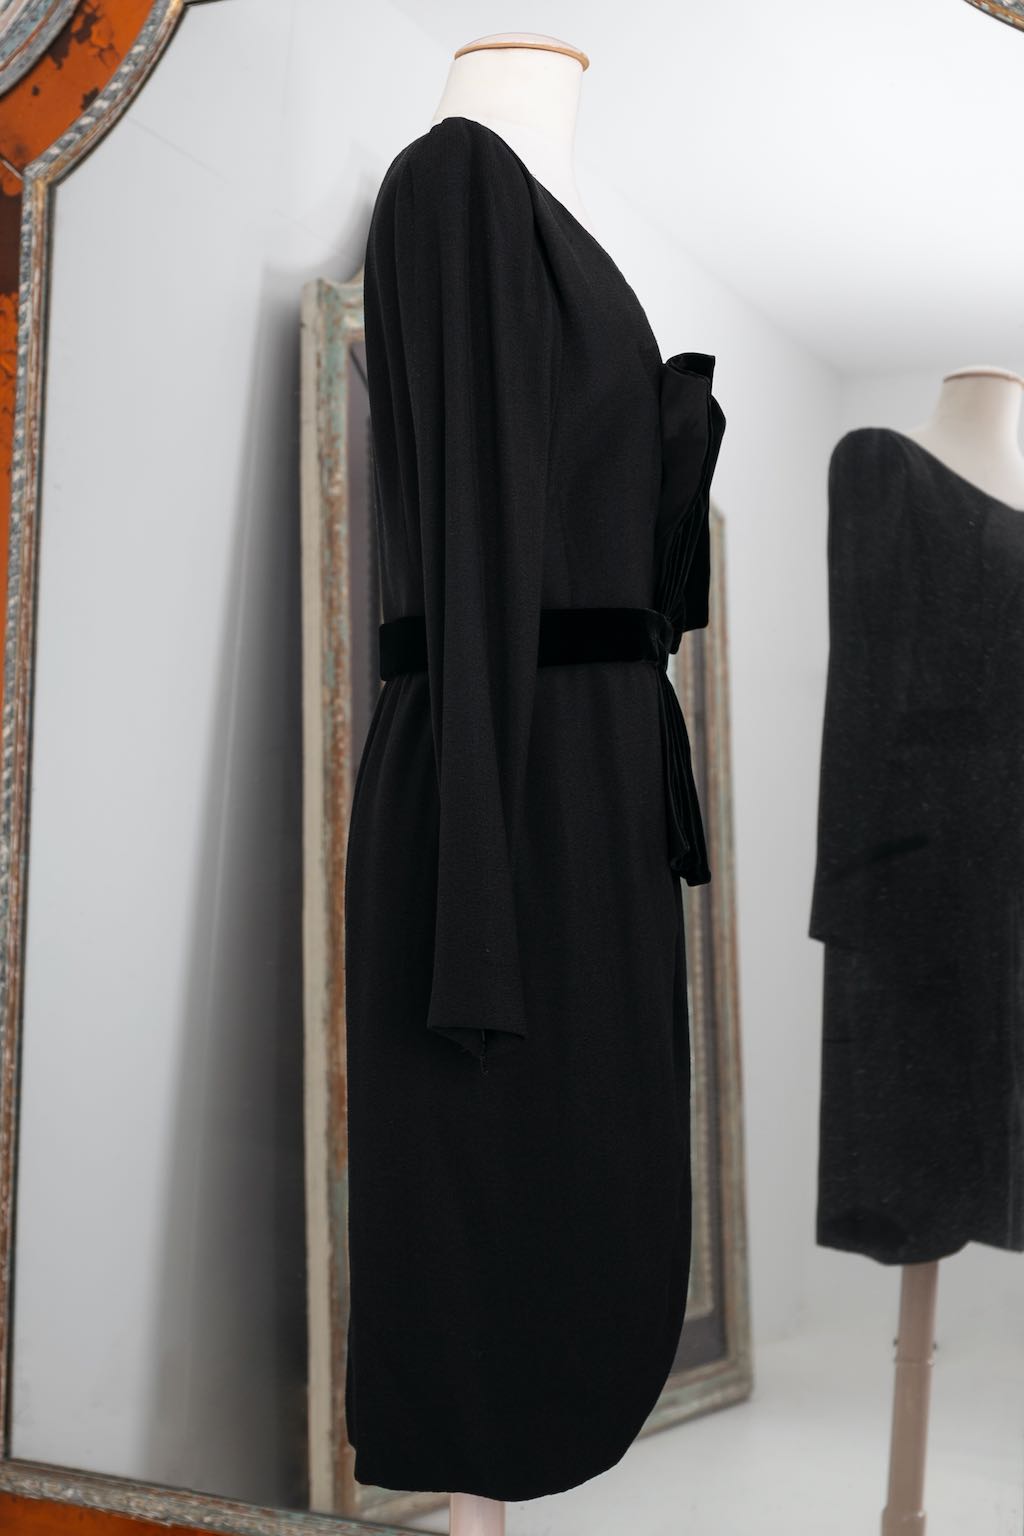 Yves saint Laurent Haute Couture black dress